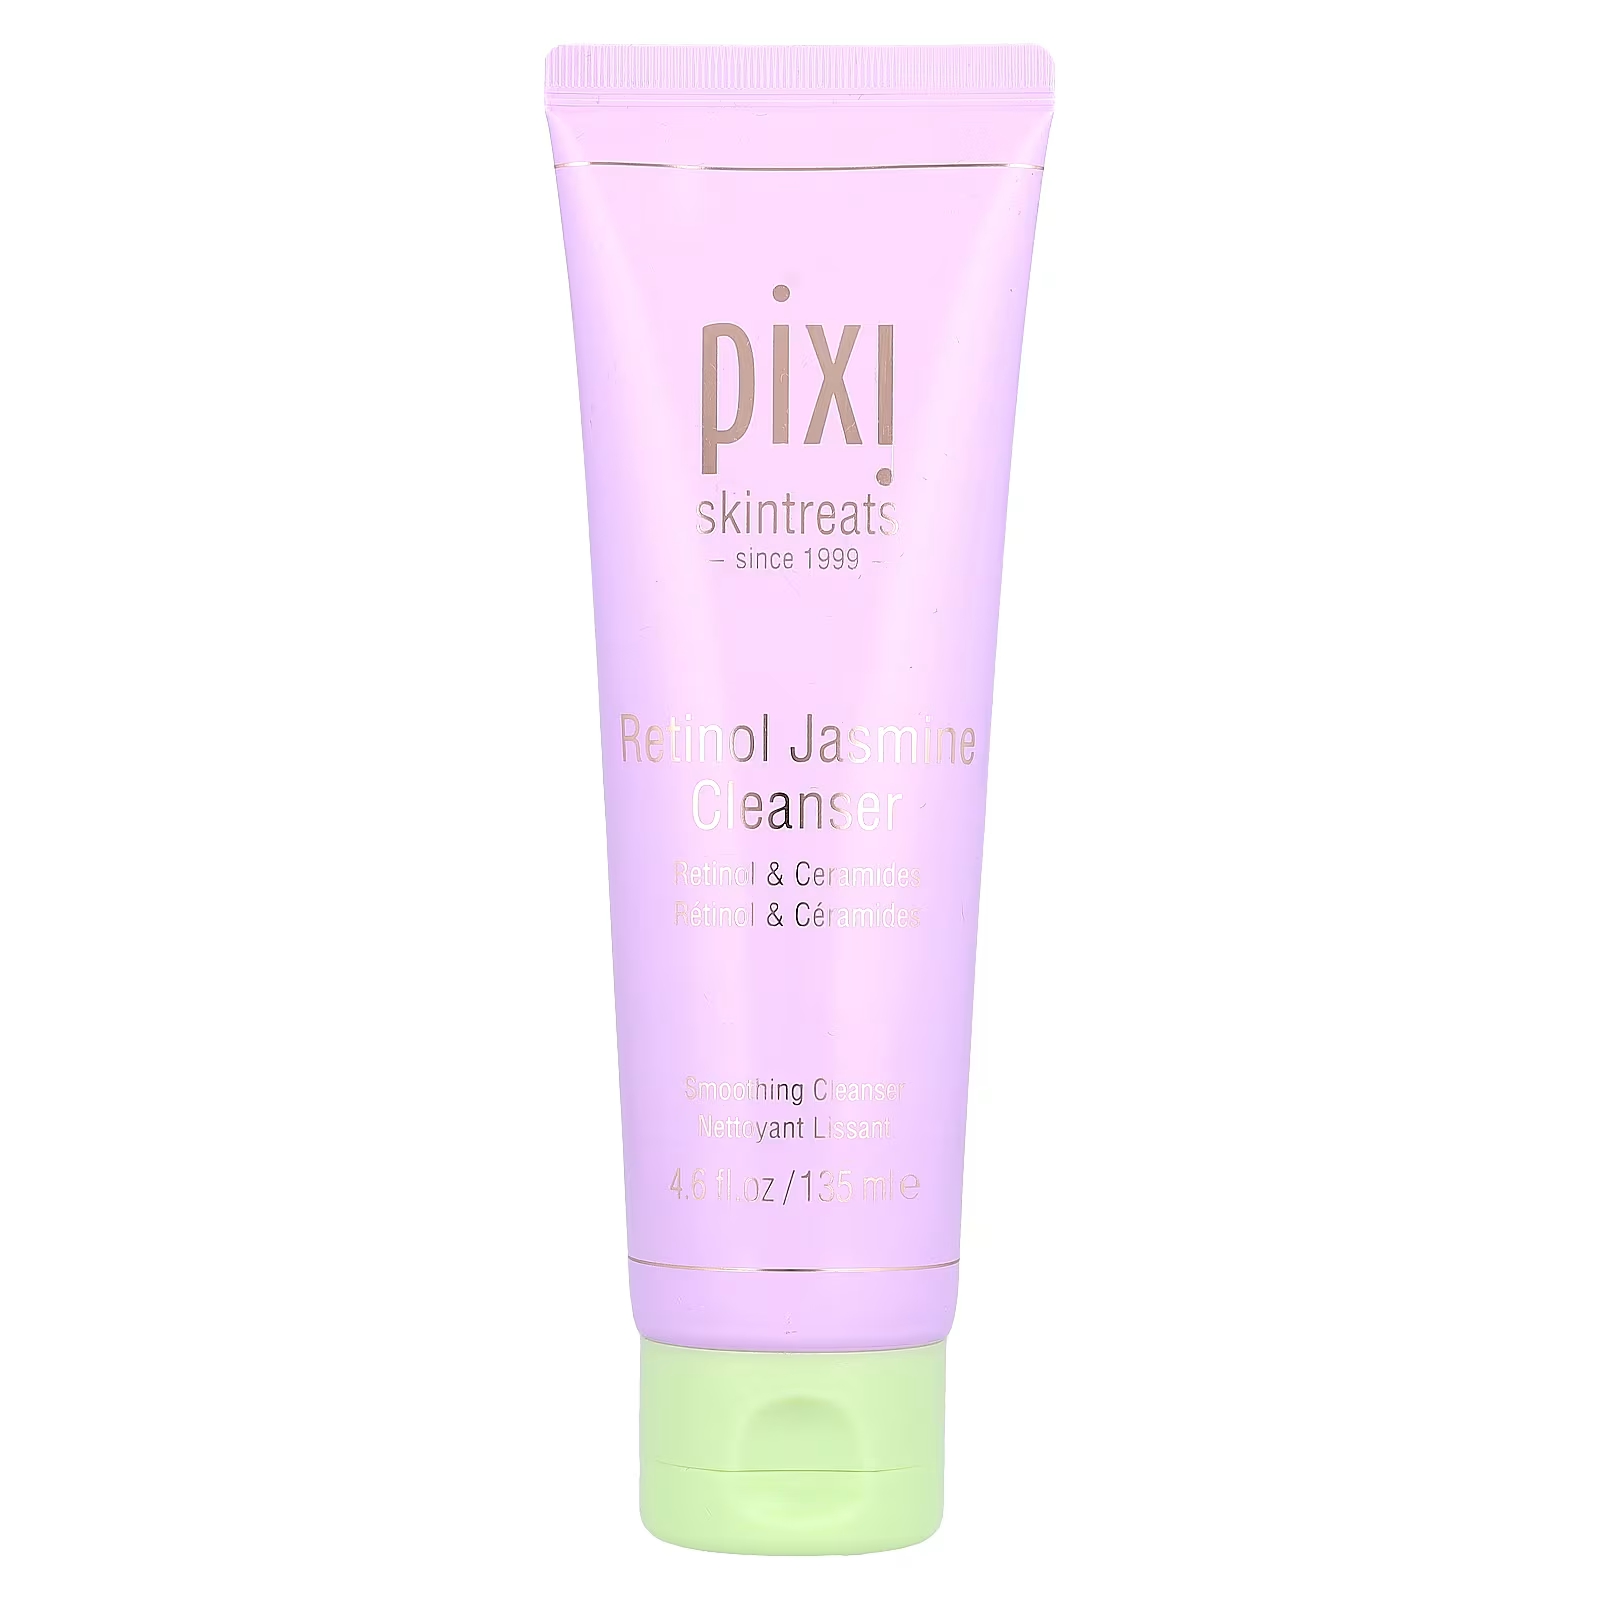 Очищающее средство Pixi Beauty Skintreats с ретинолом и жасмином, 135 мл цена и фото